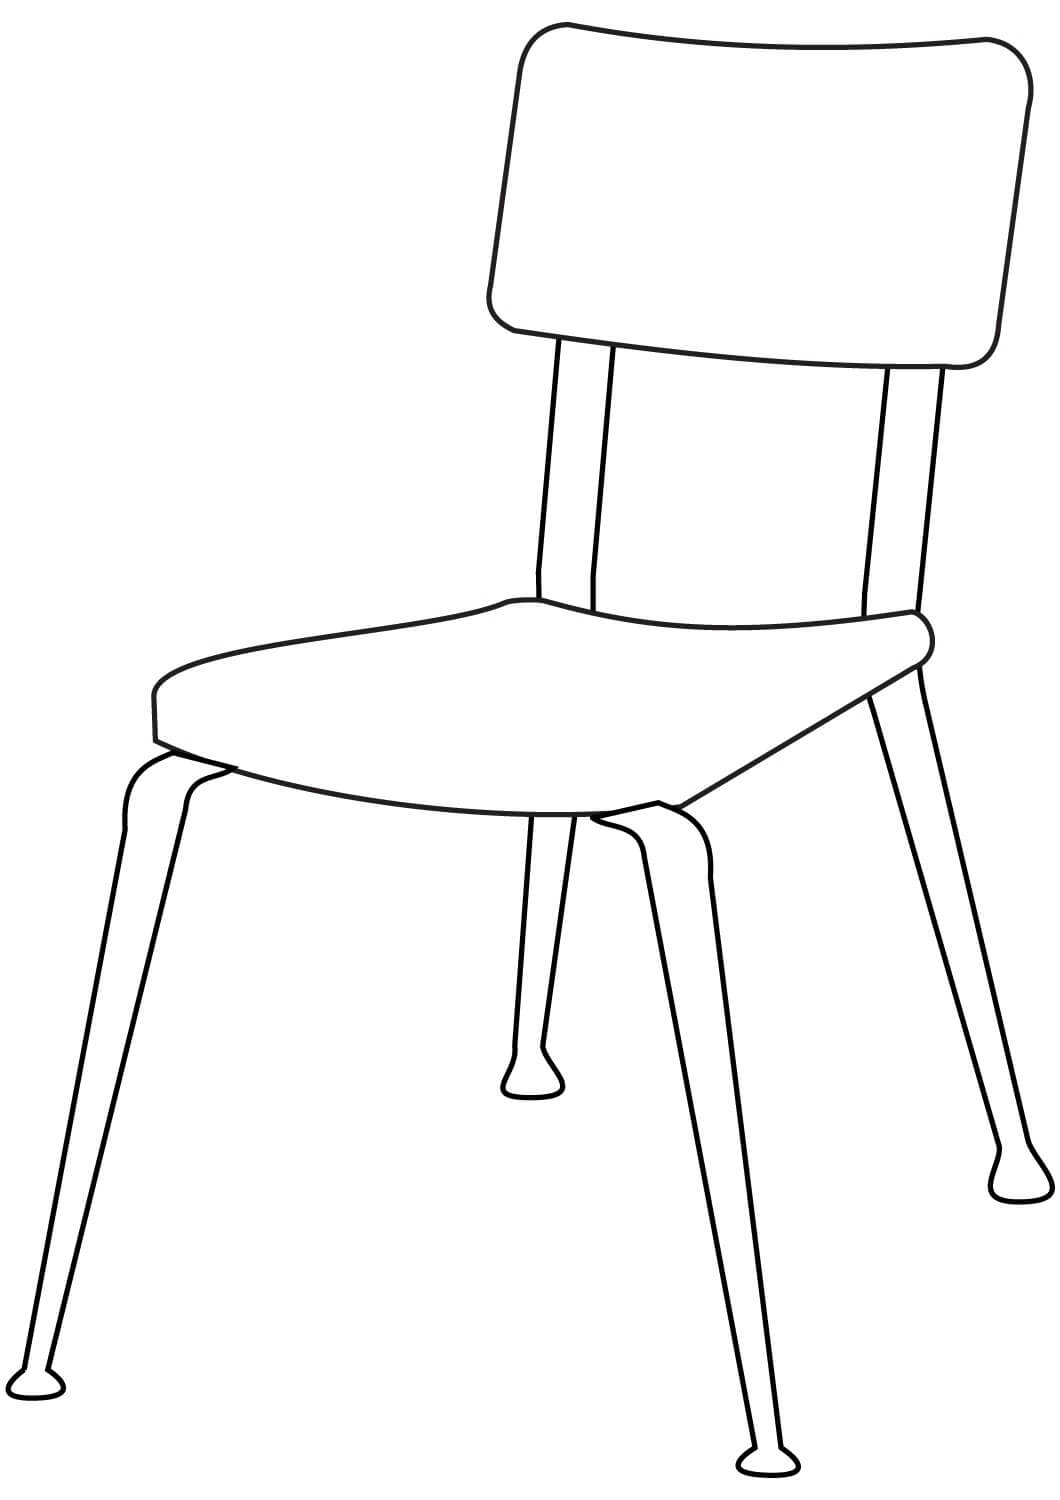 간단한 의자 coloring page